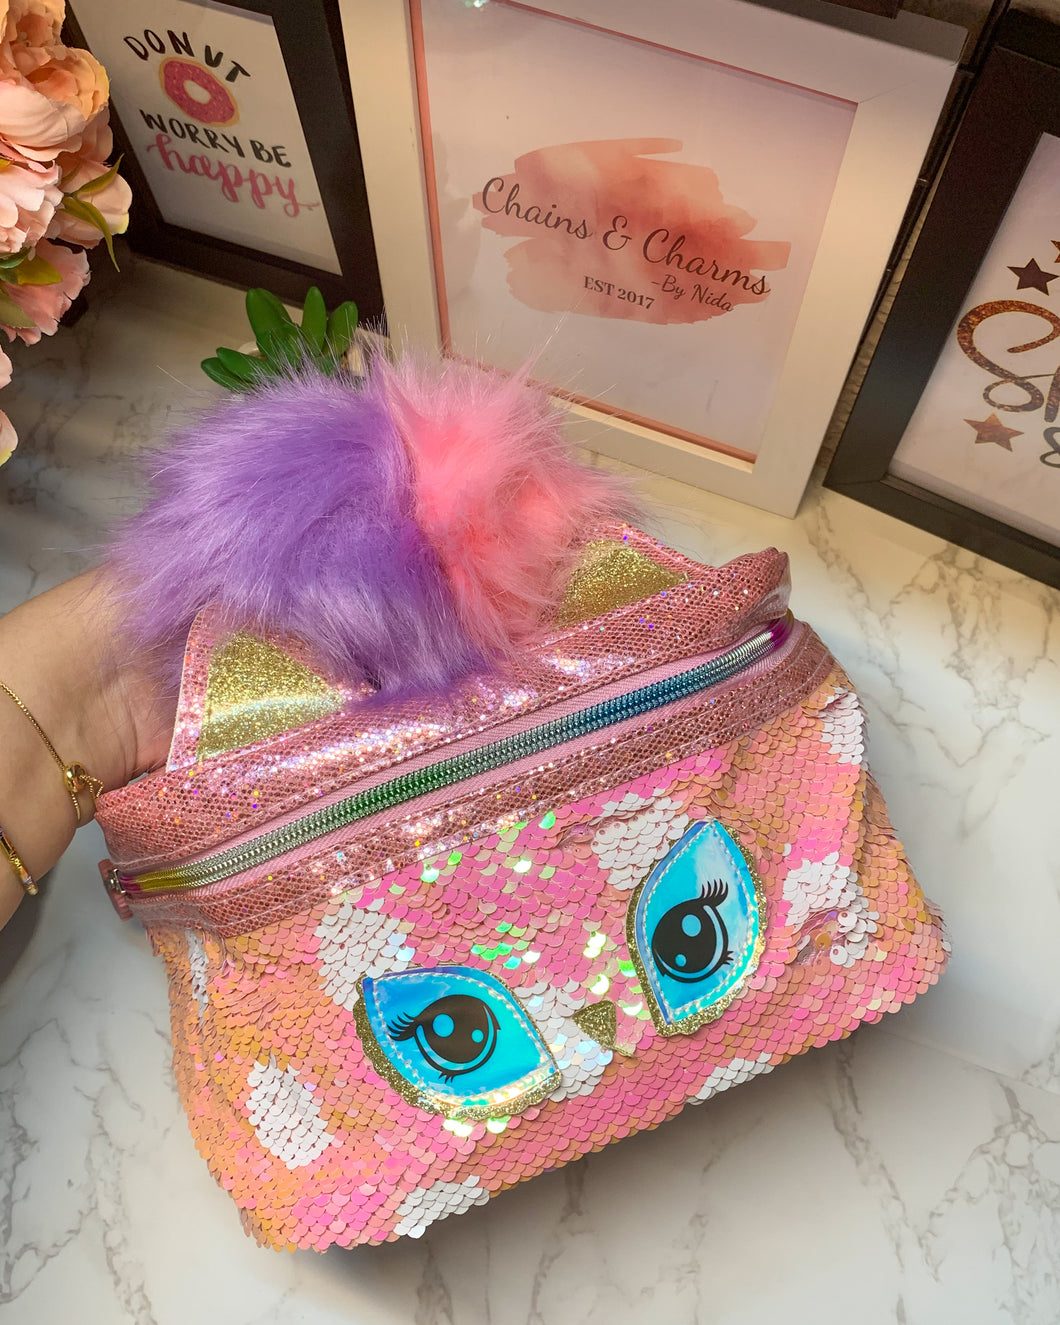 Premium Pink Vanity Bag